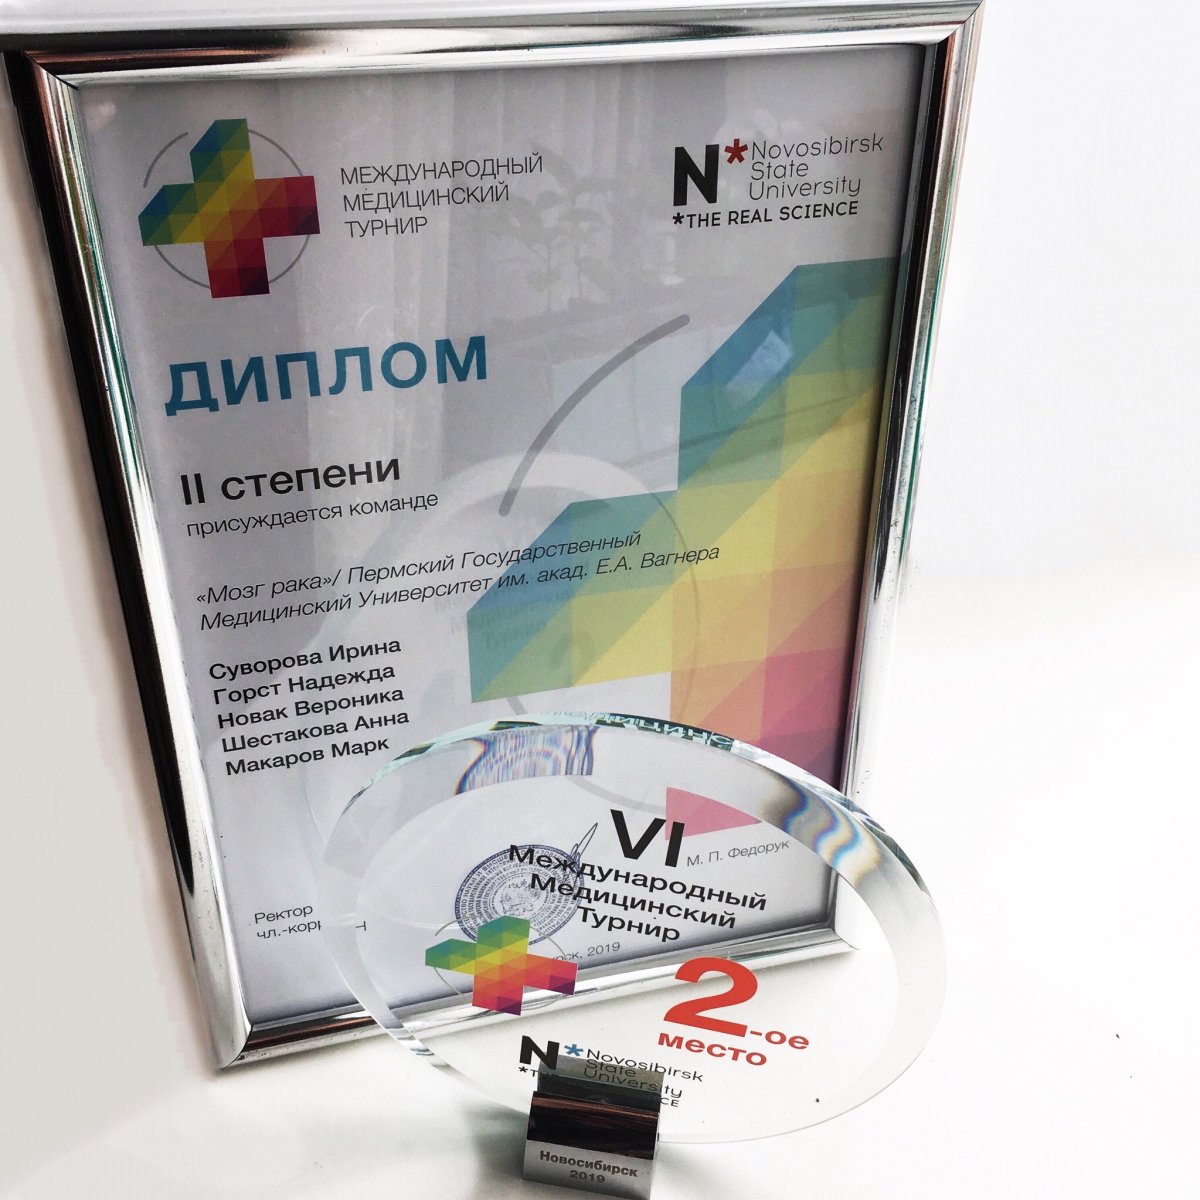 С 19 по 22 апреля в Новосибирском государственном университете прошёл очный этап VI международного медицинского турнира,в котором команда из ПГМУ заняла 2 место!🥈